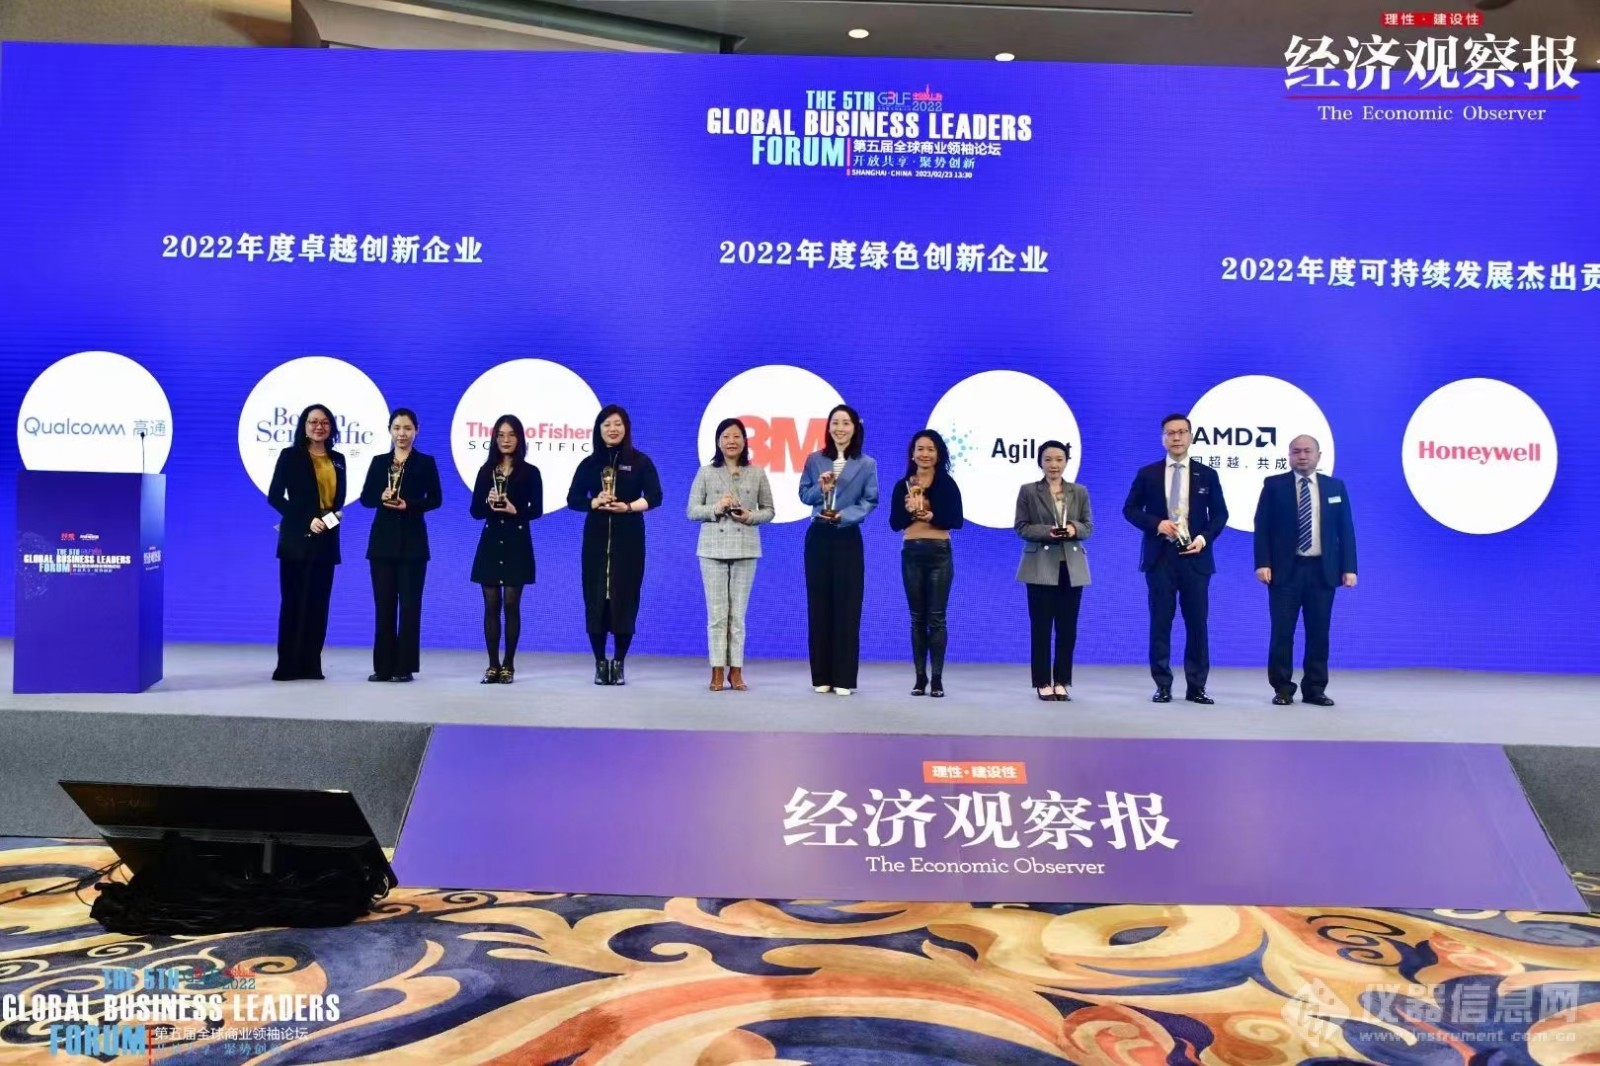 赛默飞、安捷伦等仪器企业获第五届全球商业领袖论坛“鼎新奖”